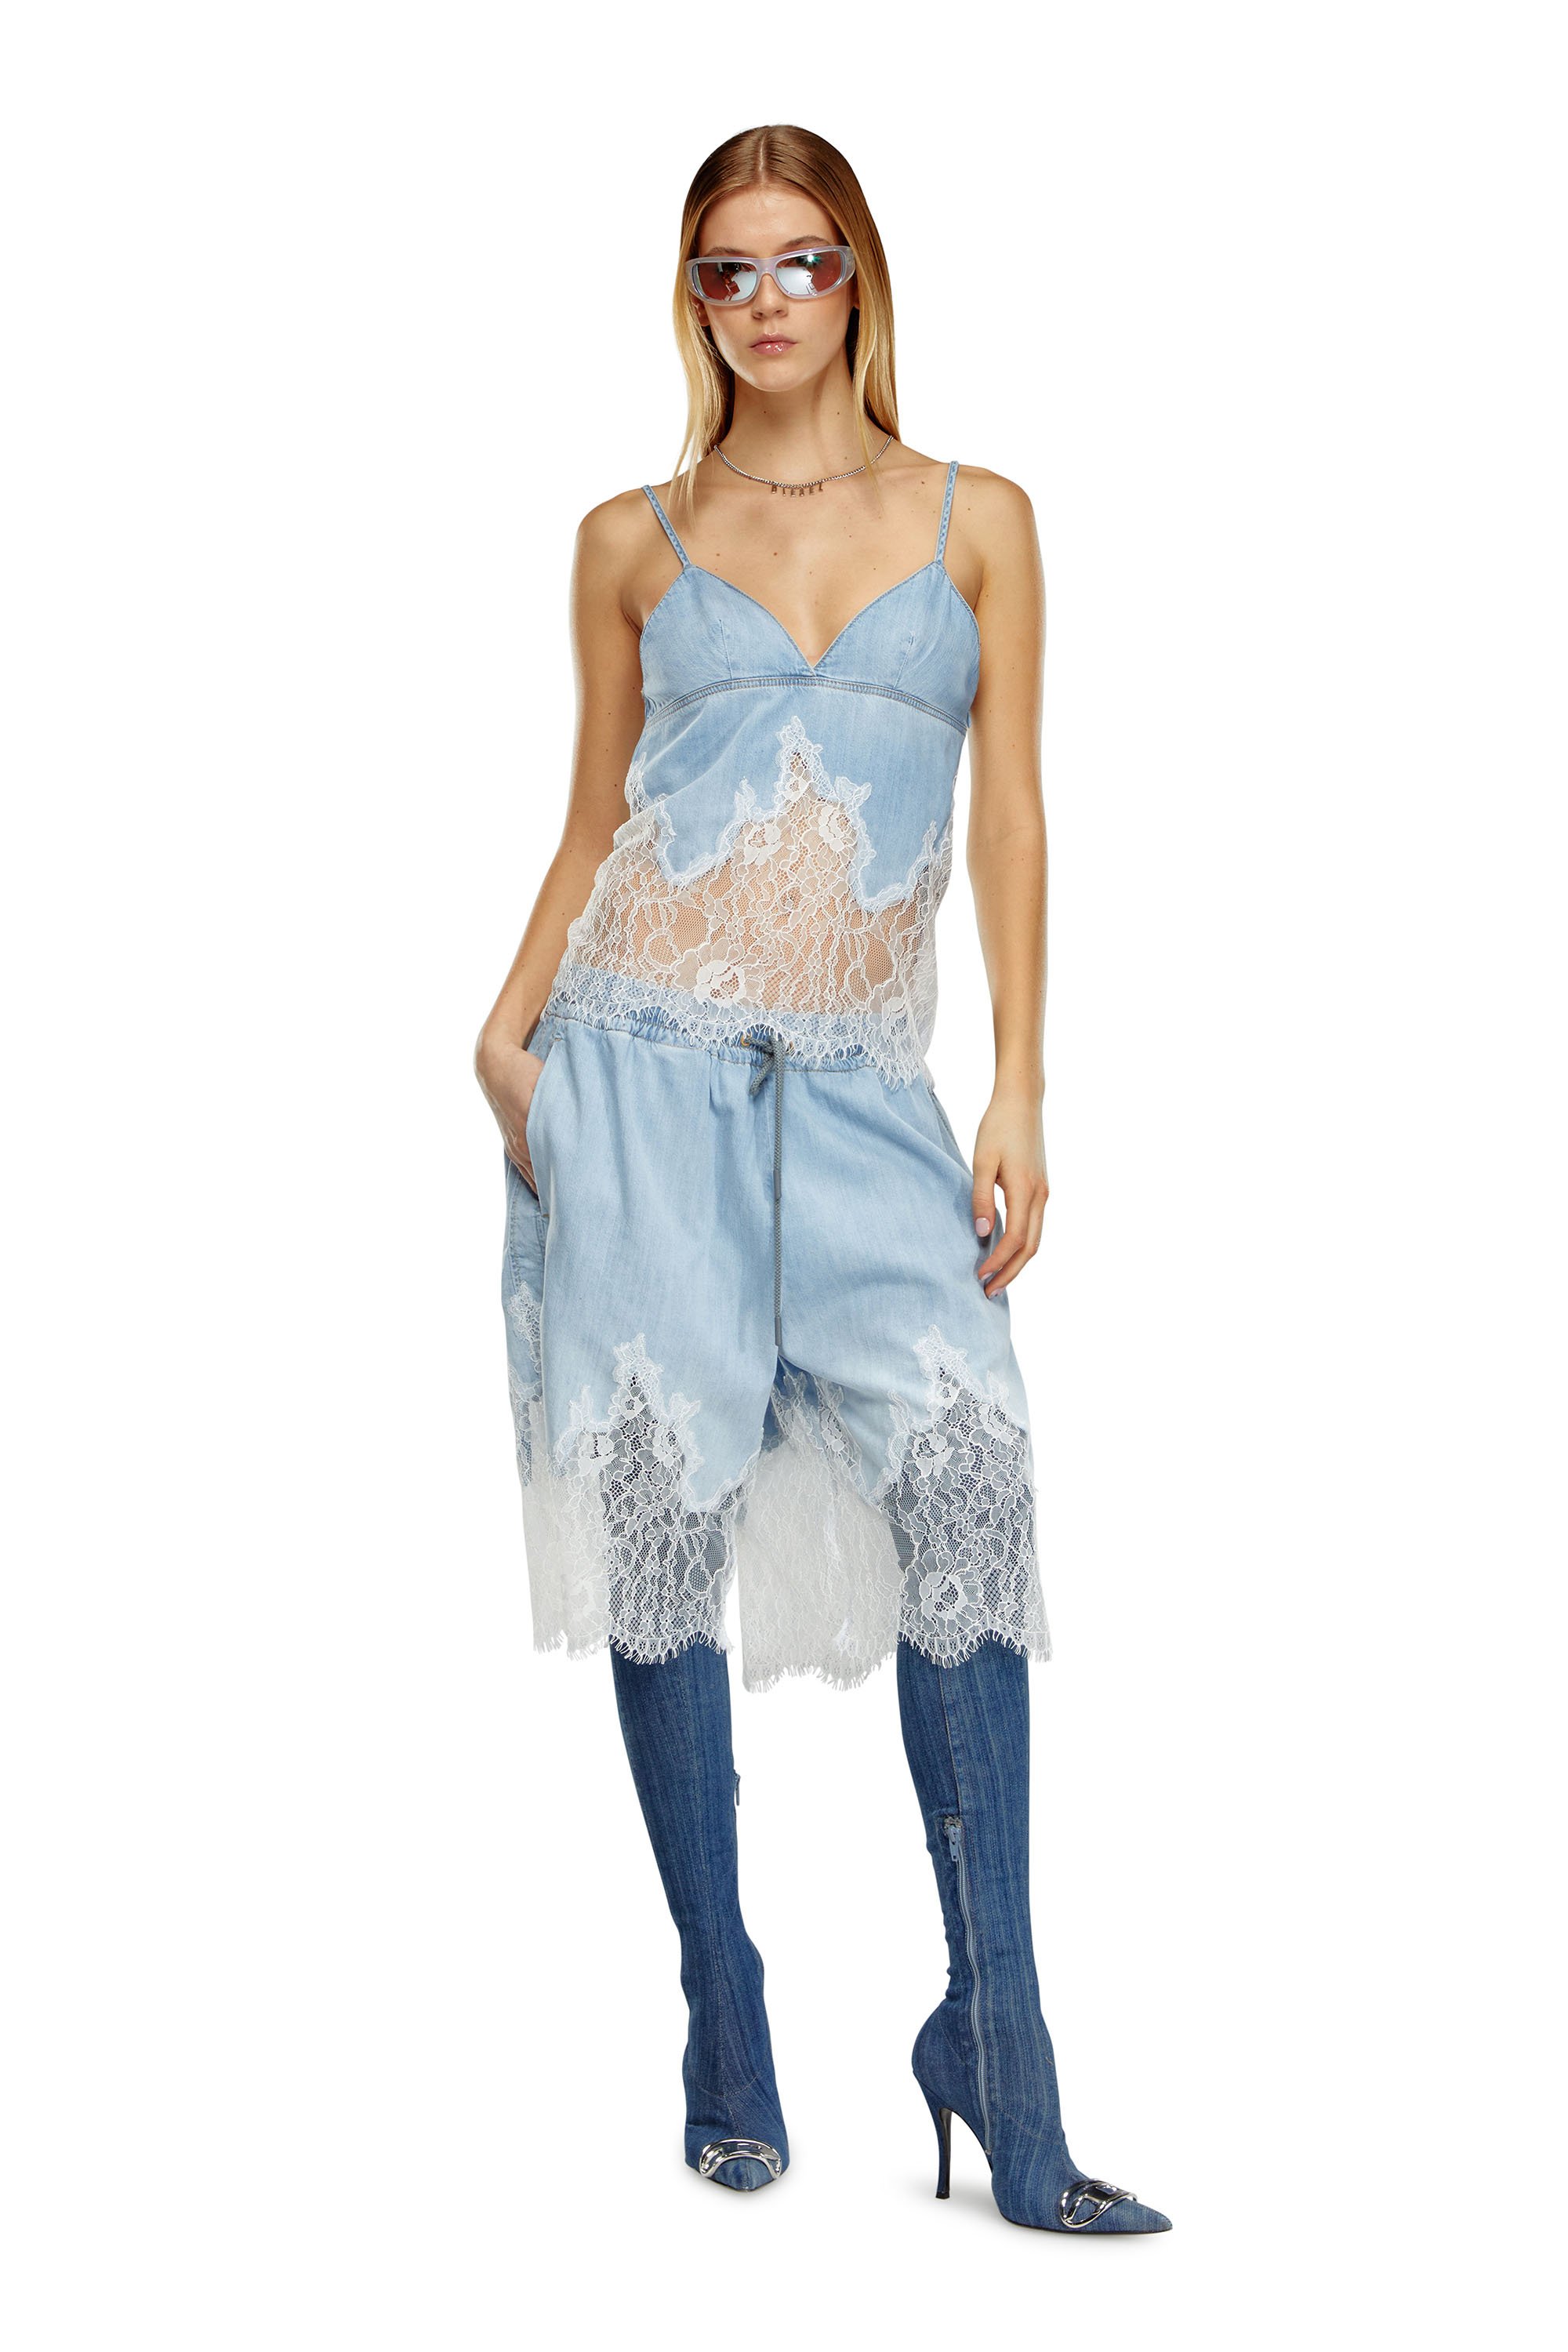 Diesel - DE-MALKIA-S, Woman Bermuda shorts in denim and lace in Blue - Image 2